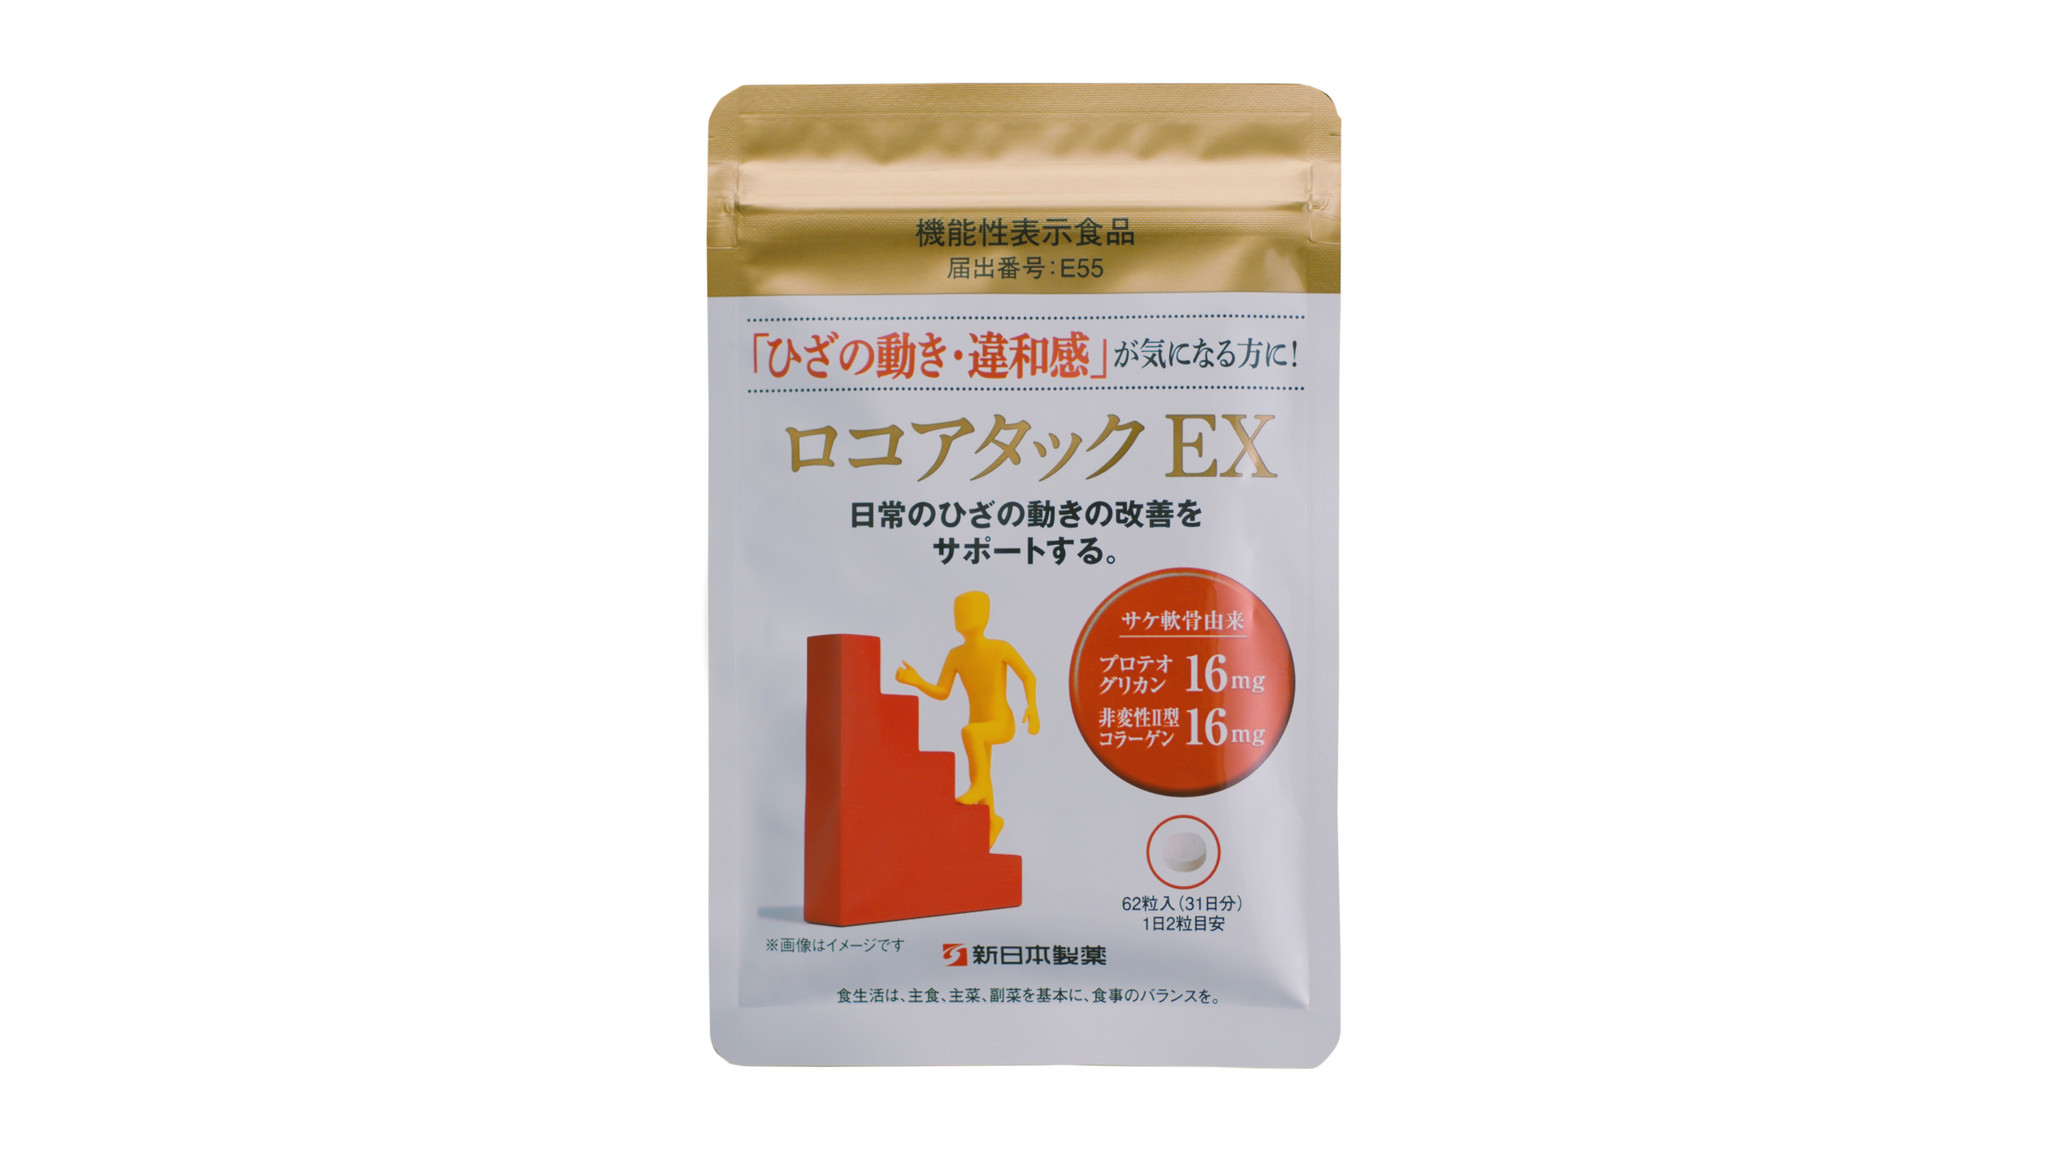 低価格 ロコアタックＥX 新日本製薬 2袋